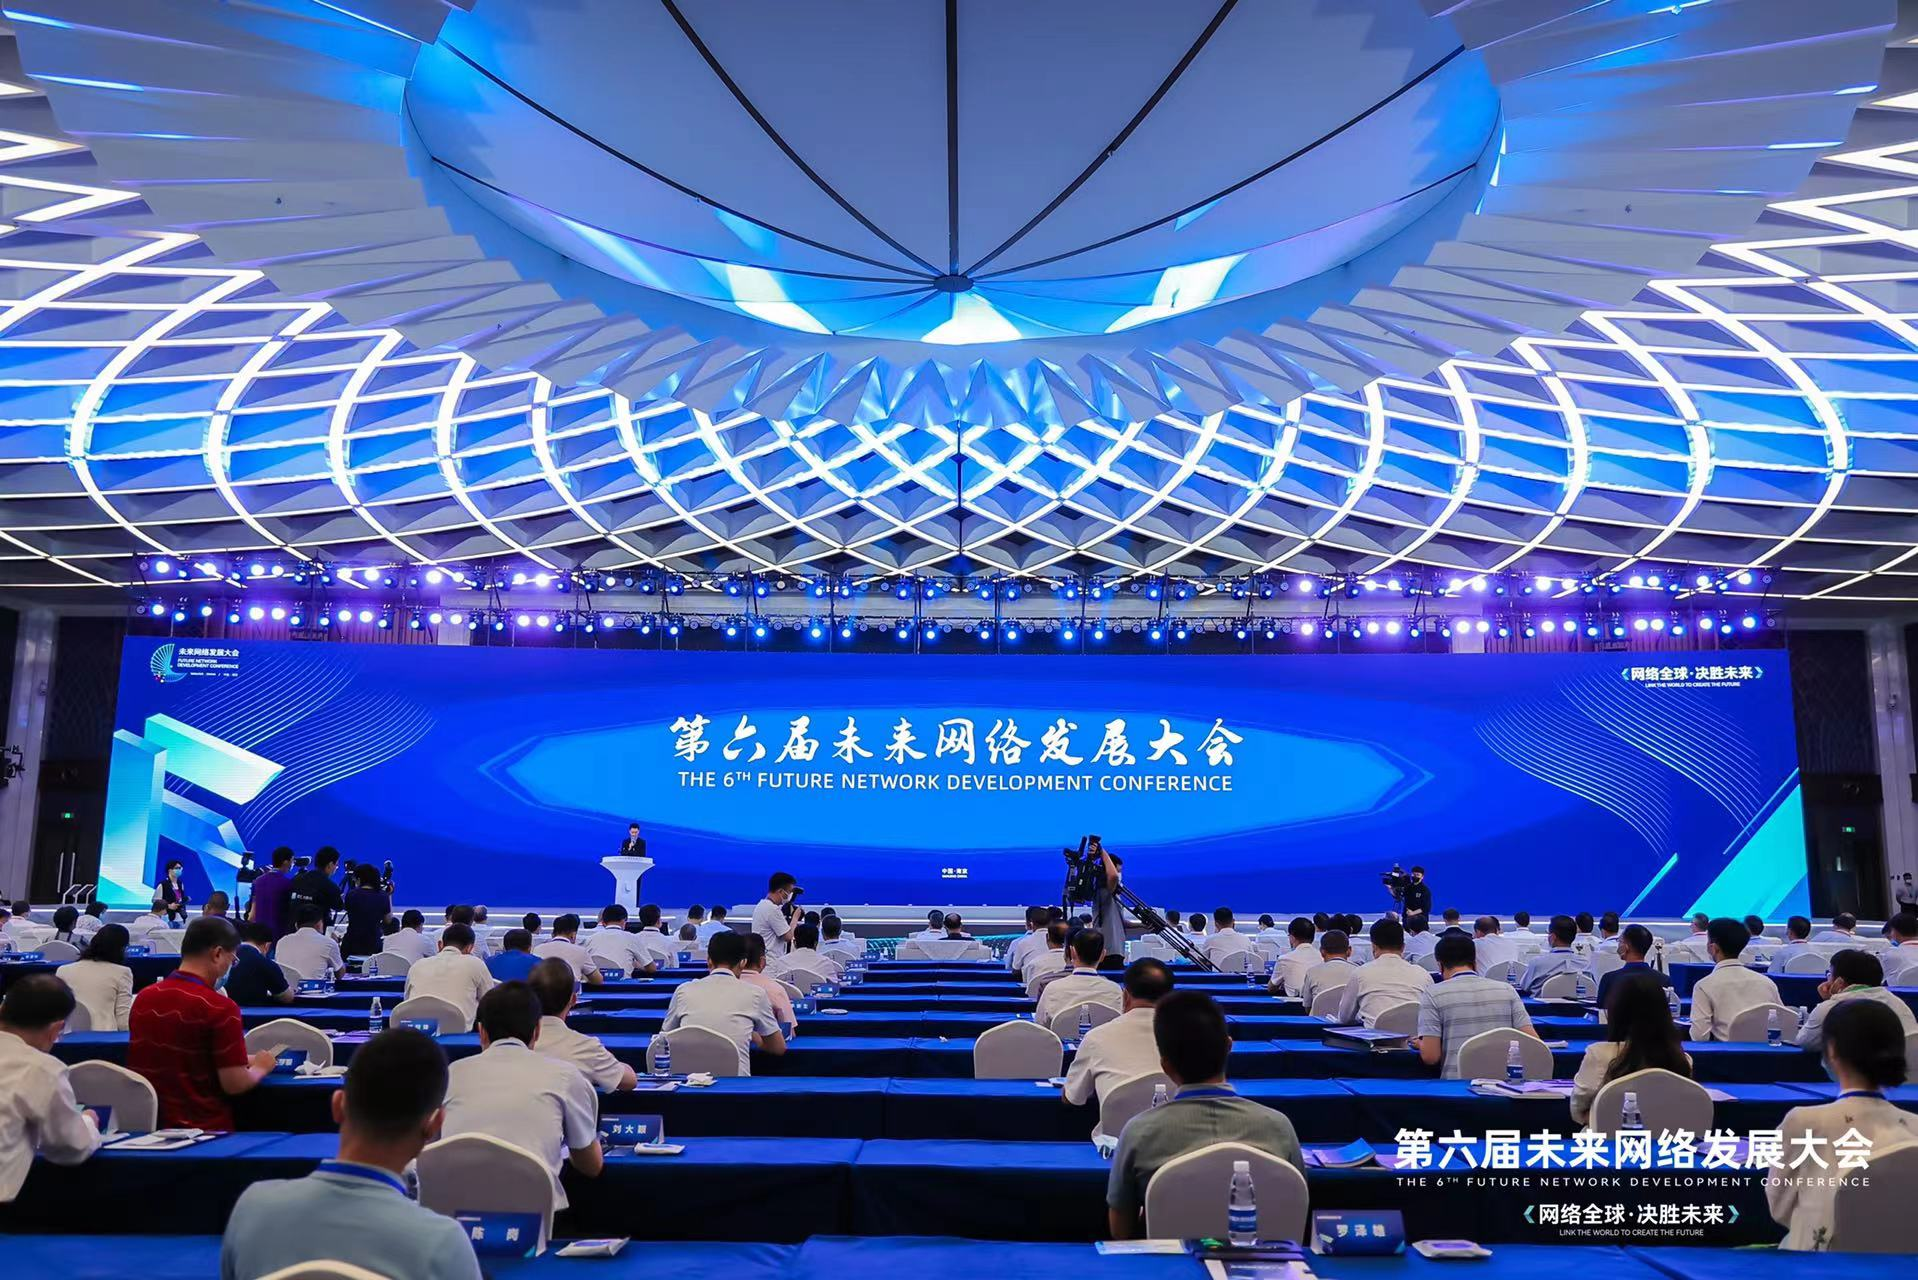 爱南京 | 网络变革万物，创新引领未来！第六届未来网络发展大会在南京举行